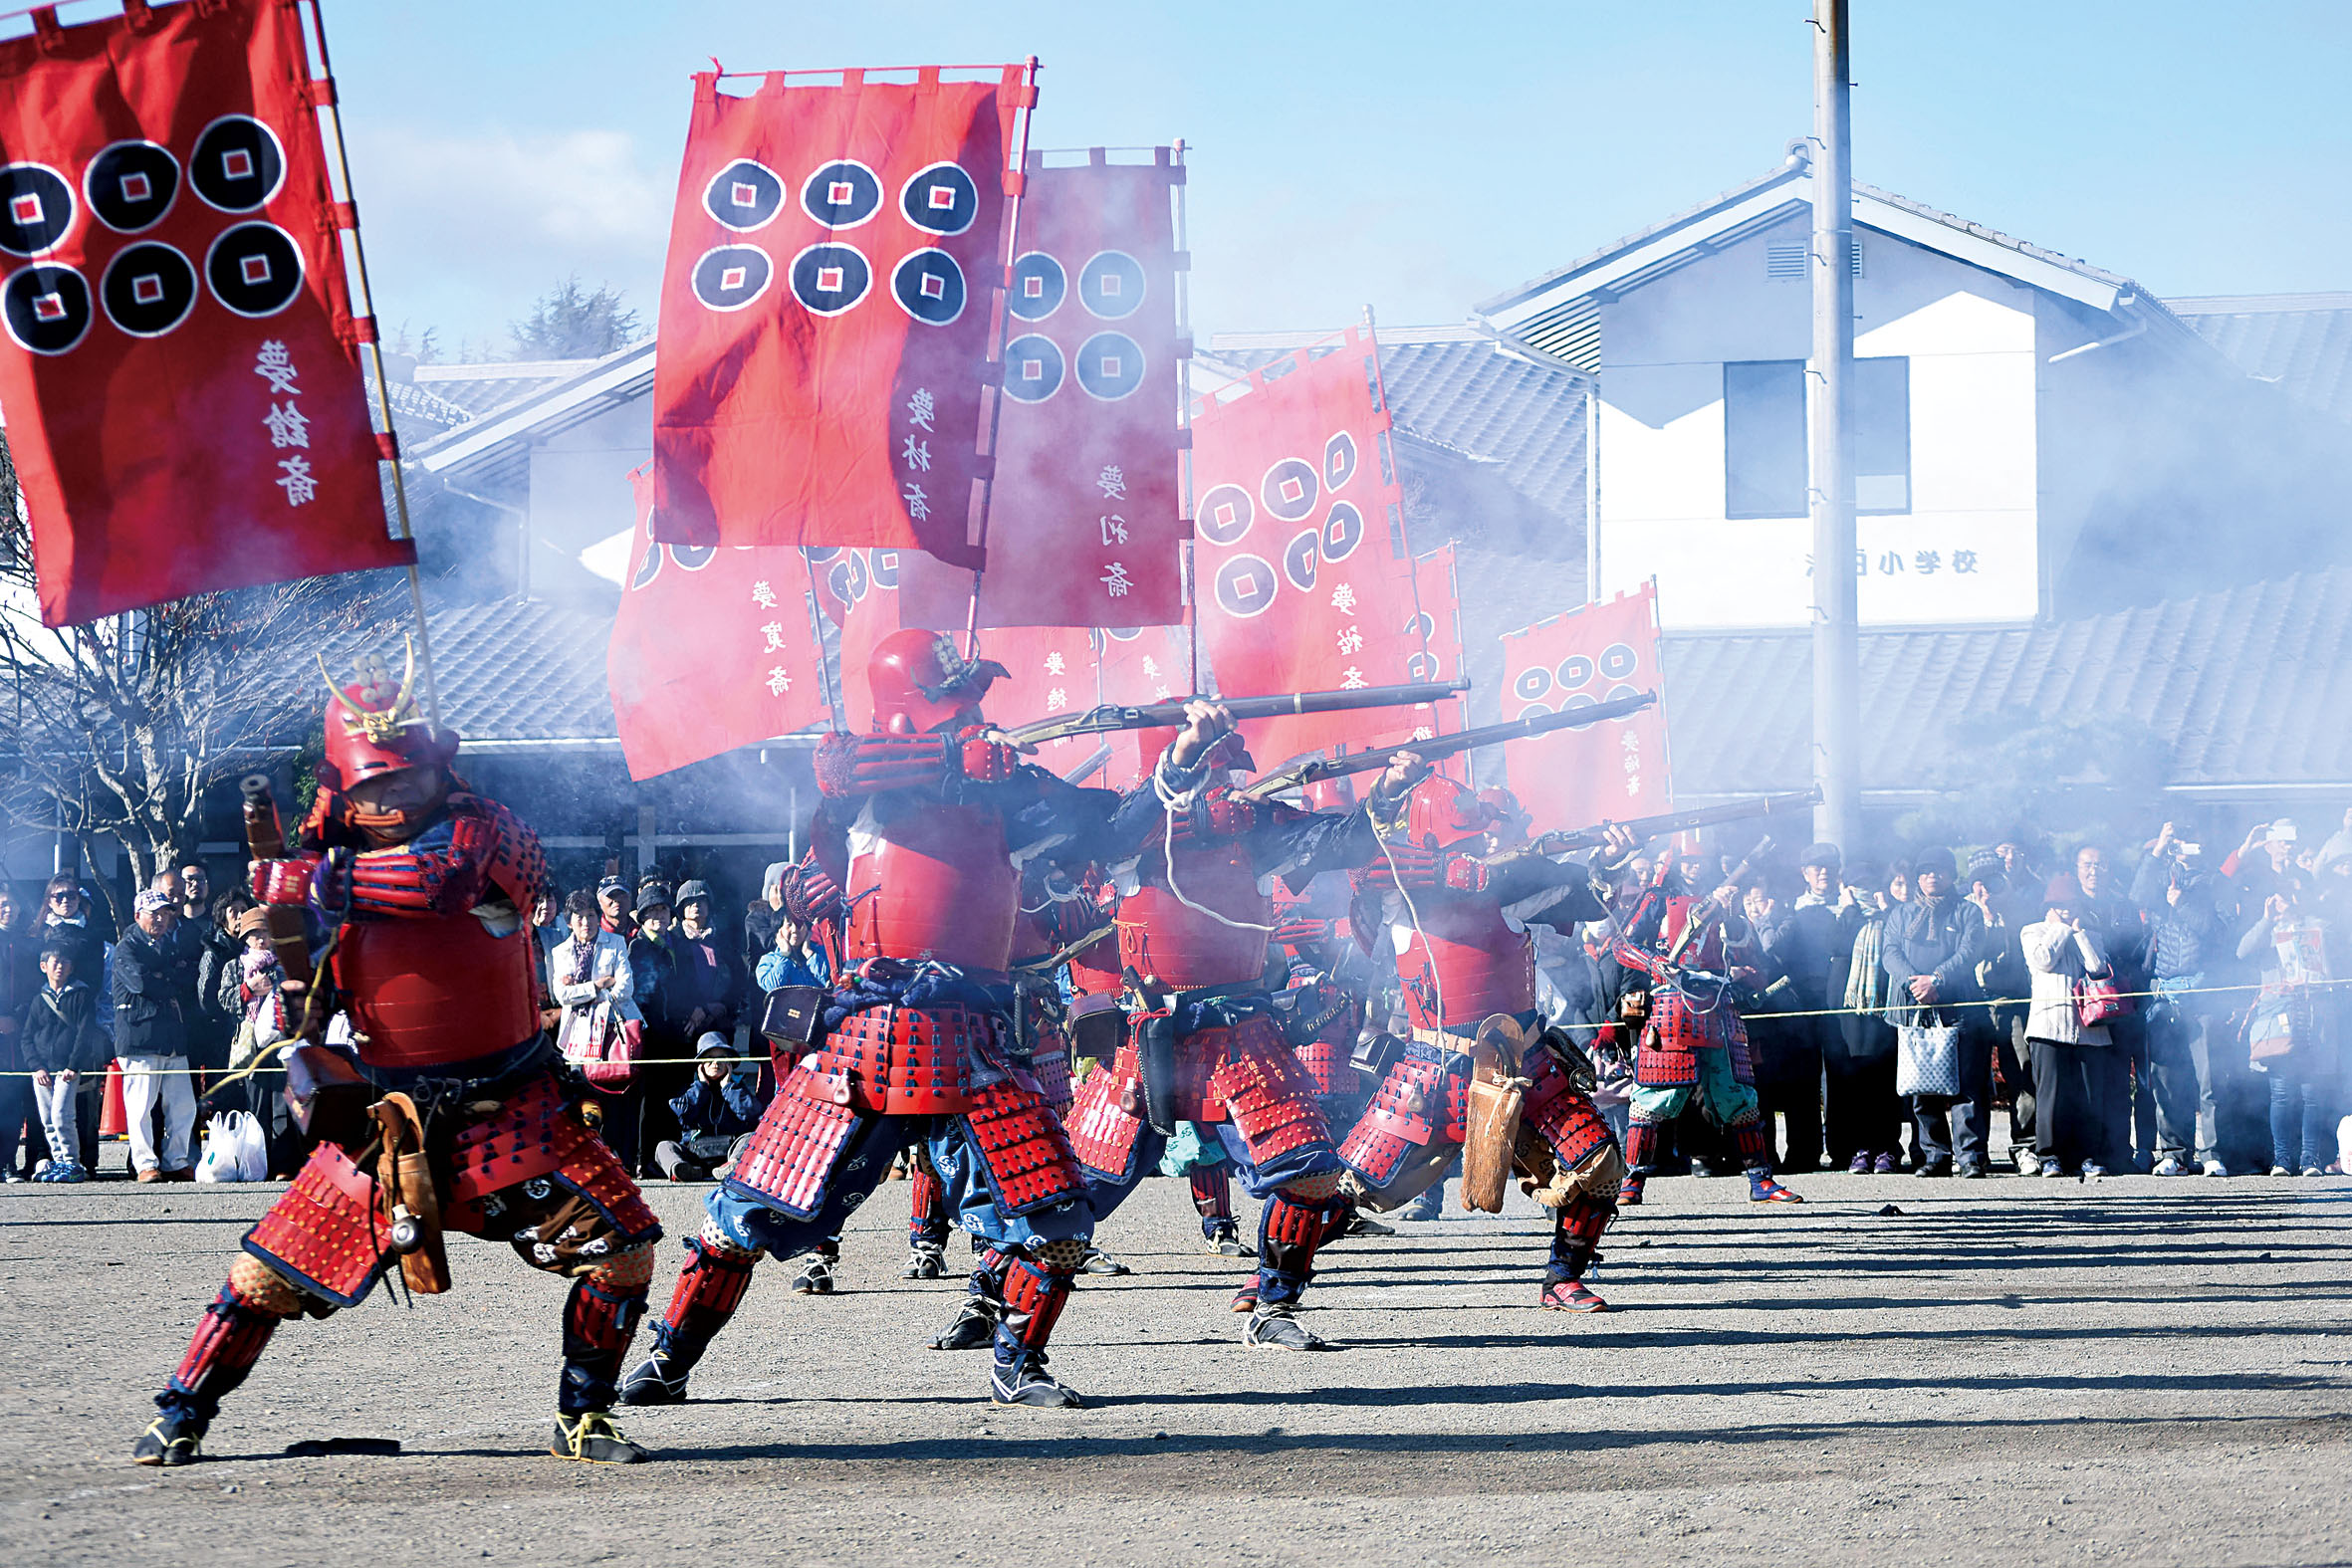 上州真田祭的铁炮队的非常有魄力的开炮演示也是必看的